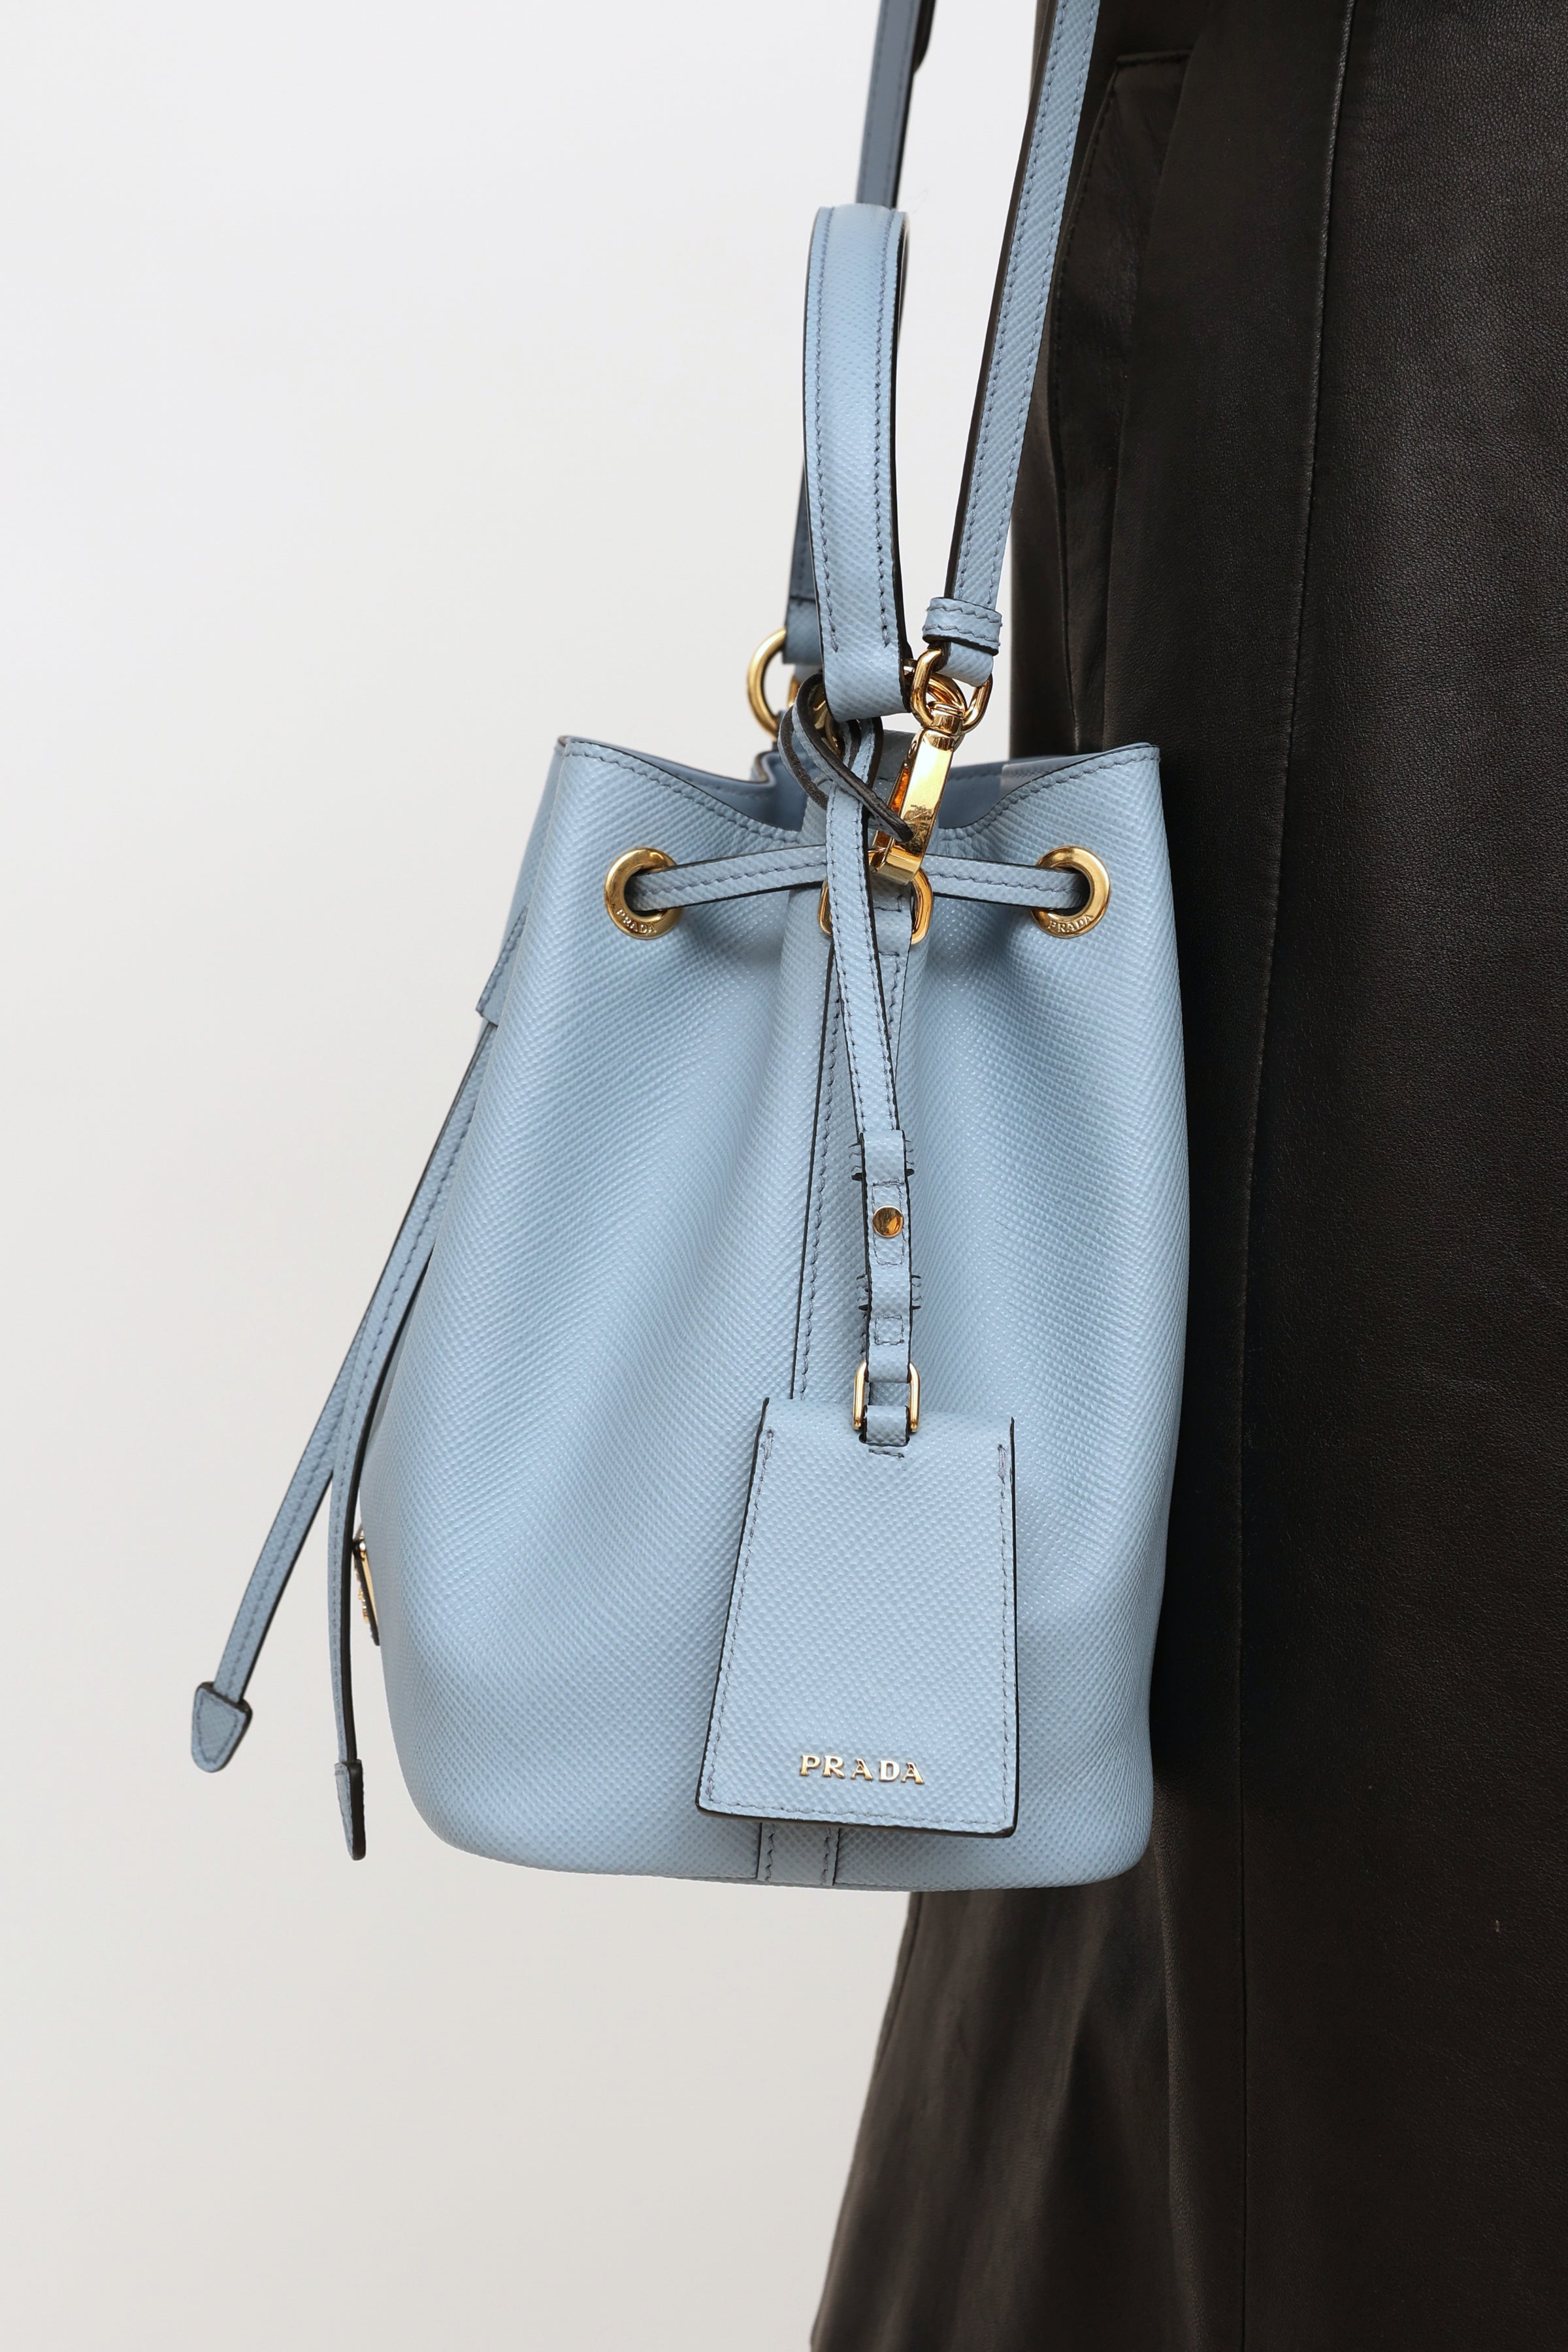 Prada Light Blue Saffiano Leather Tote Bag - Yoogi's Closet